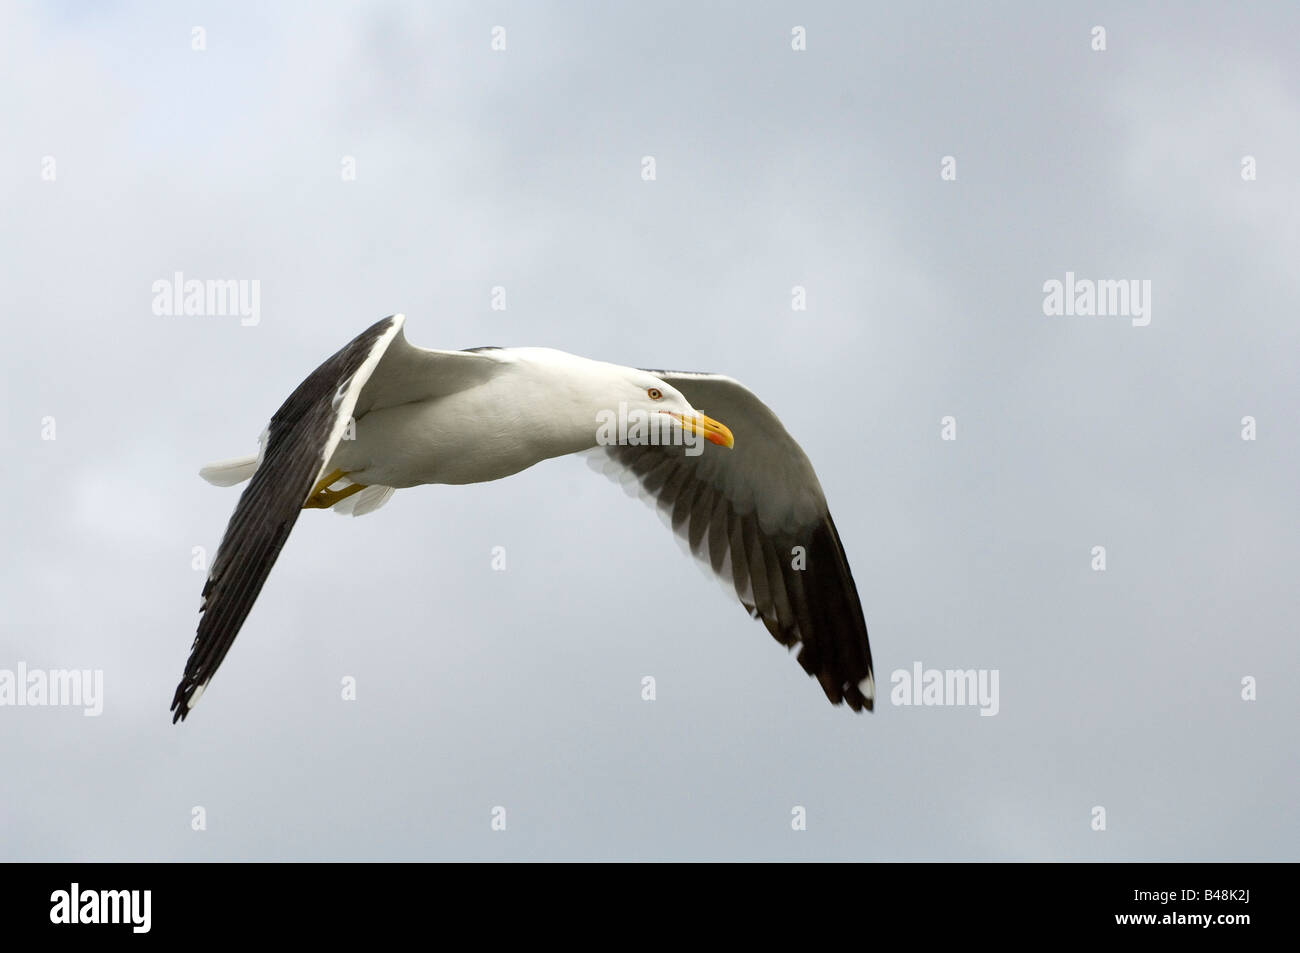 Heringsmoewe lesser black backed gull Larus fuscus Stock Photo